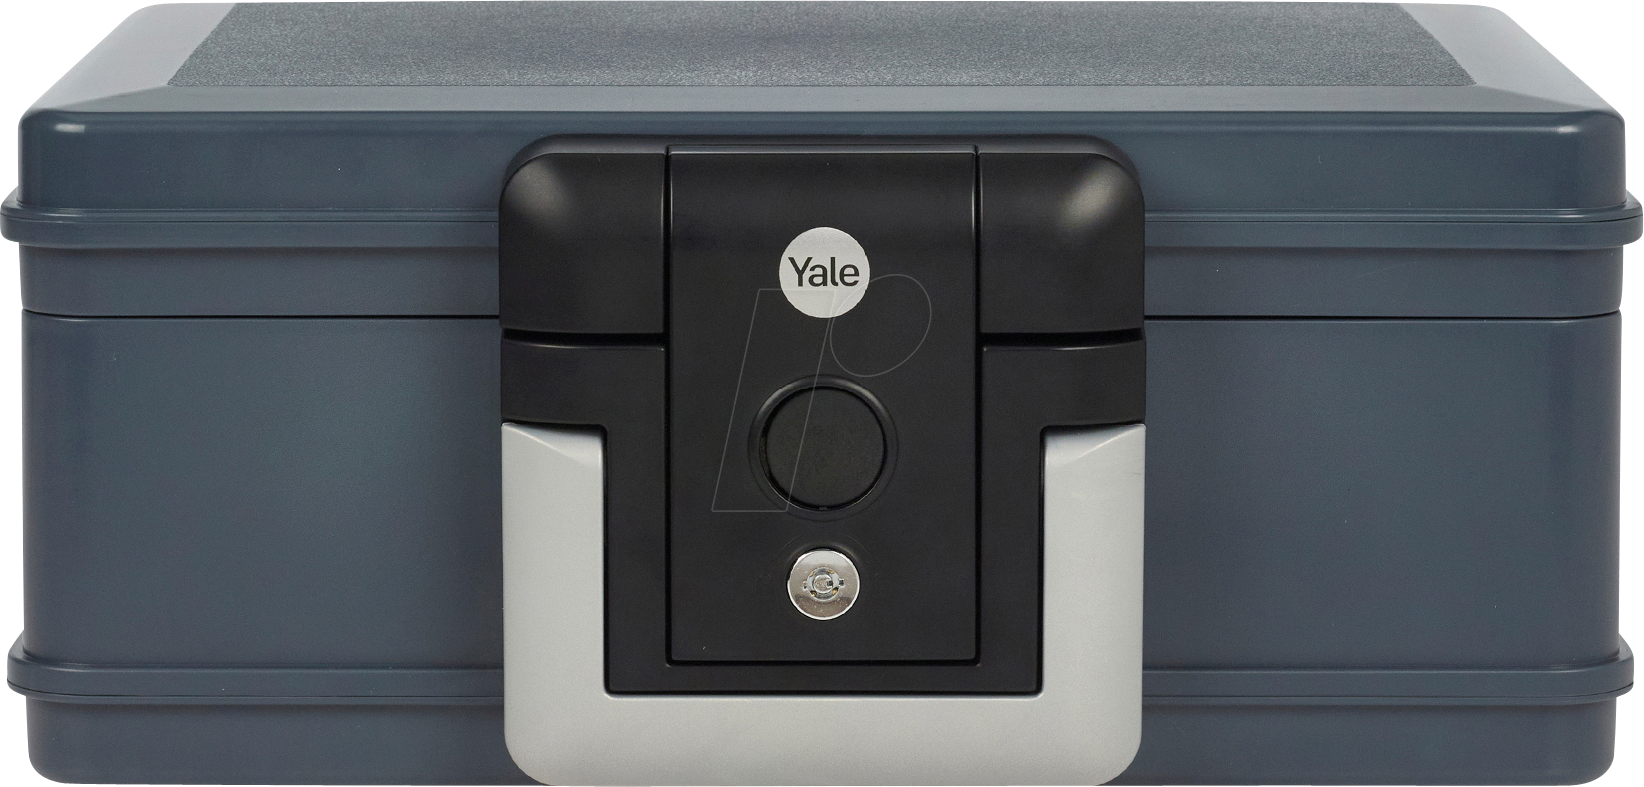 YE YFC154KB1 - Feuerschutz-Kassette S, DIN B5 von Yale